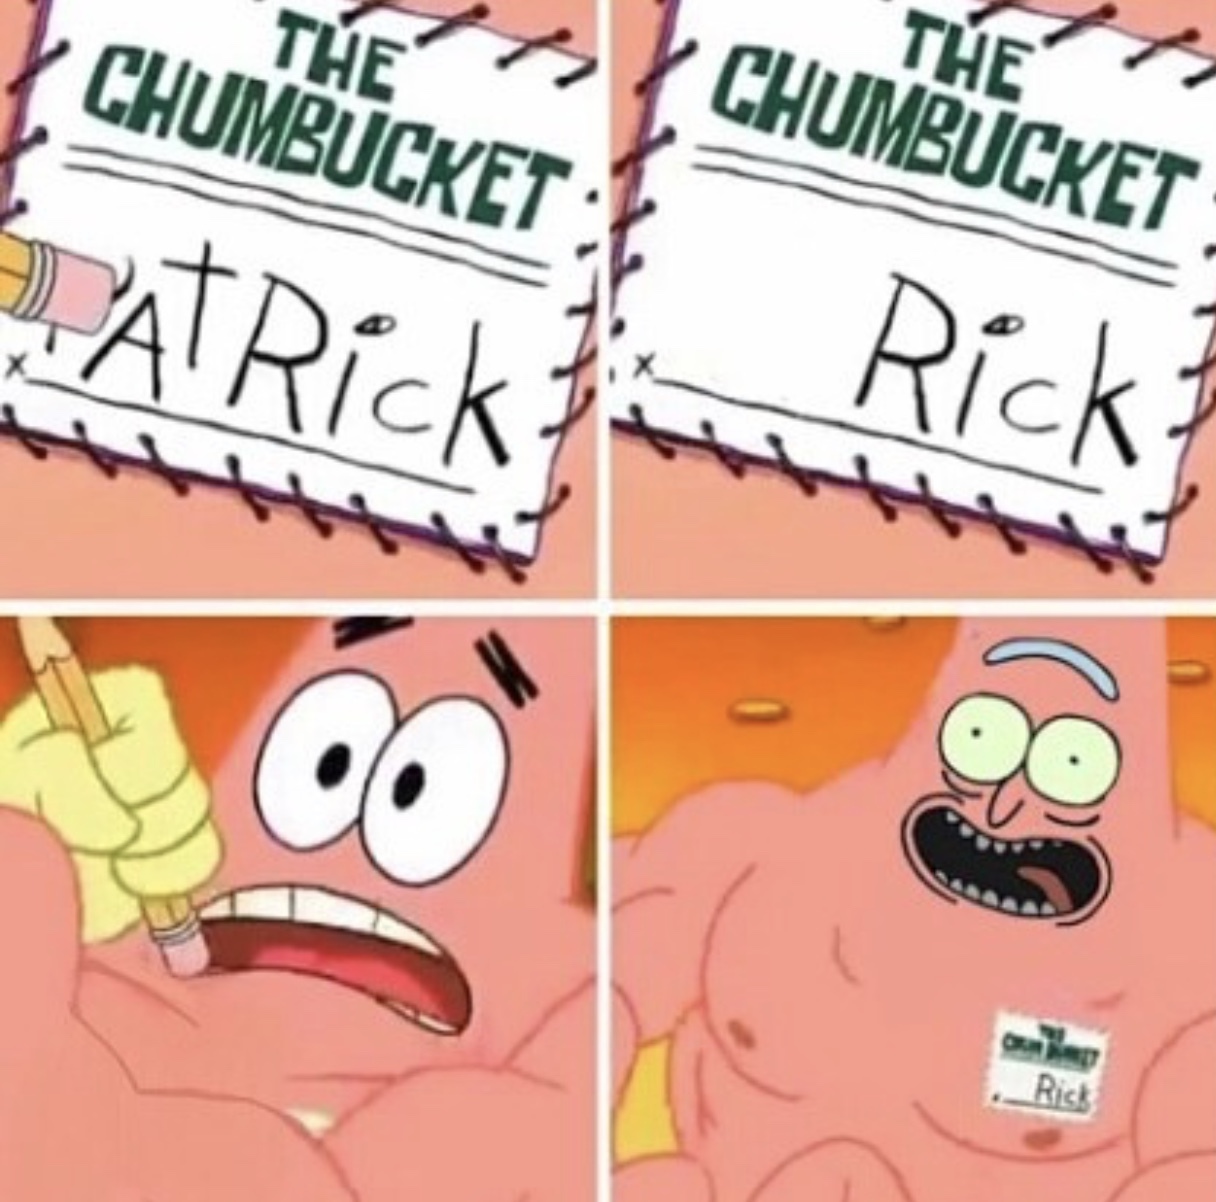 Patrick or Rick? - meme